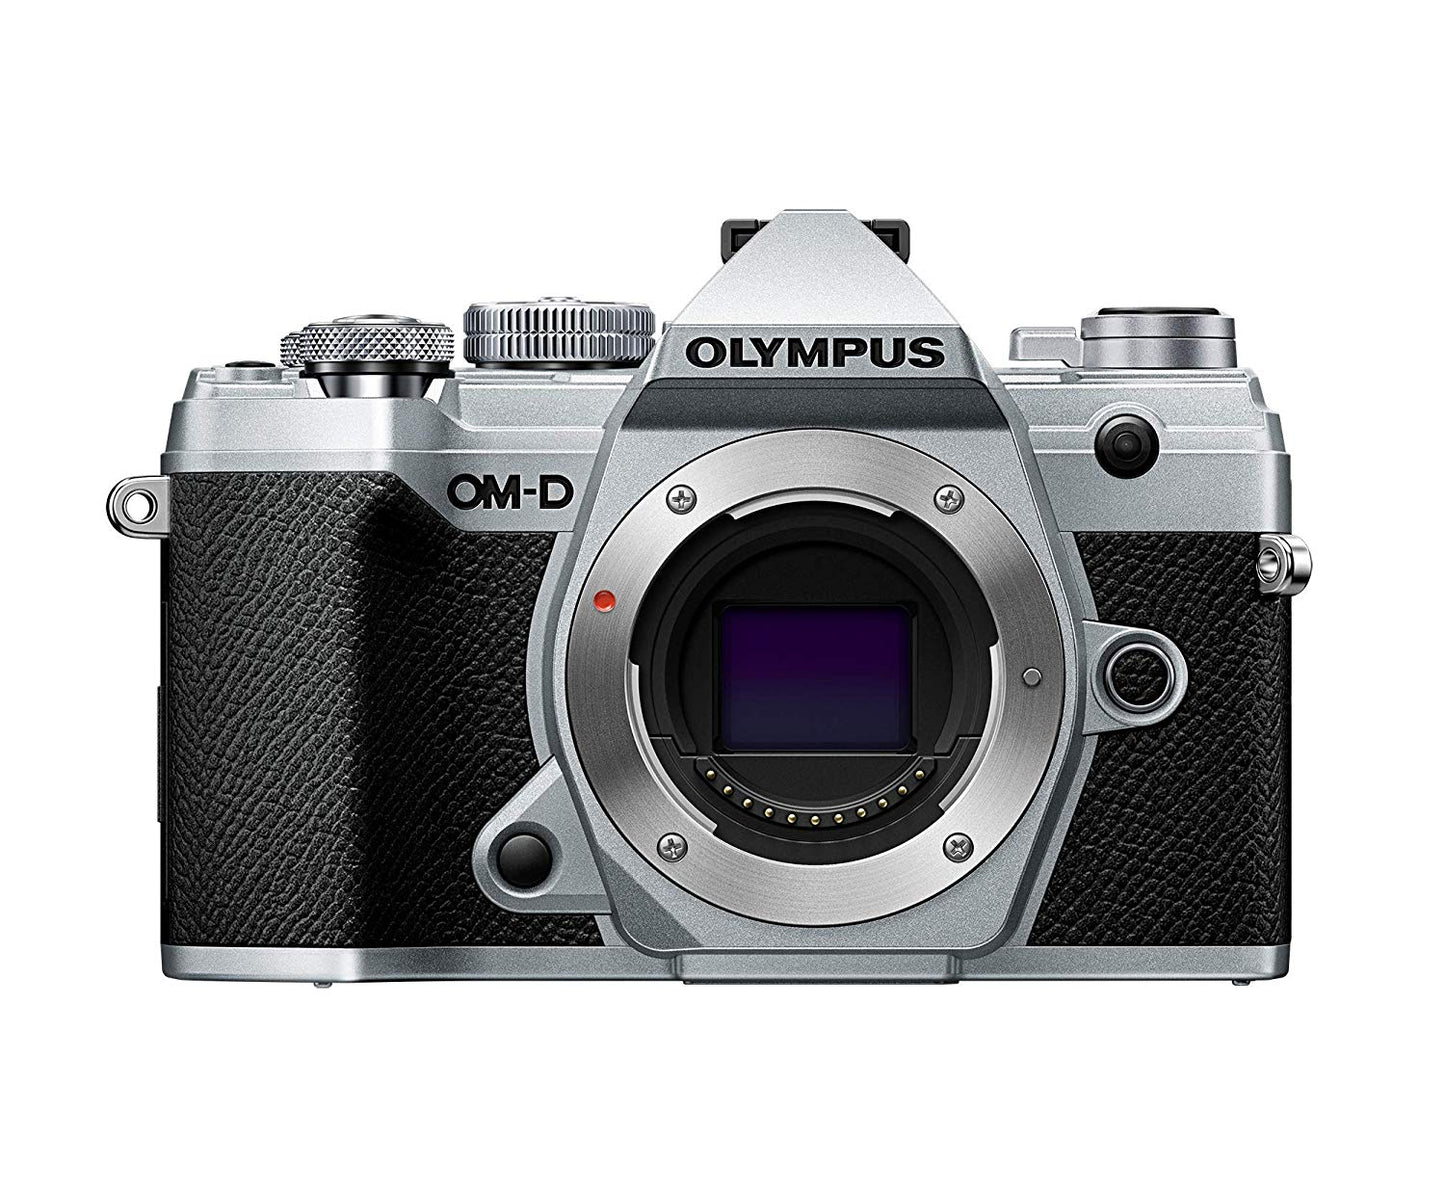 Olympus OM-D E-M5 Mark III Digital SLR Camera - Body Silver